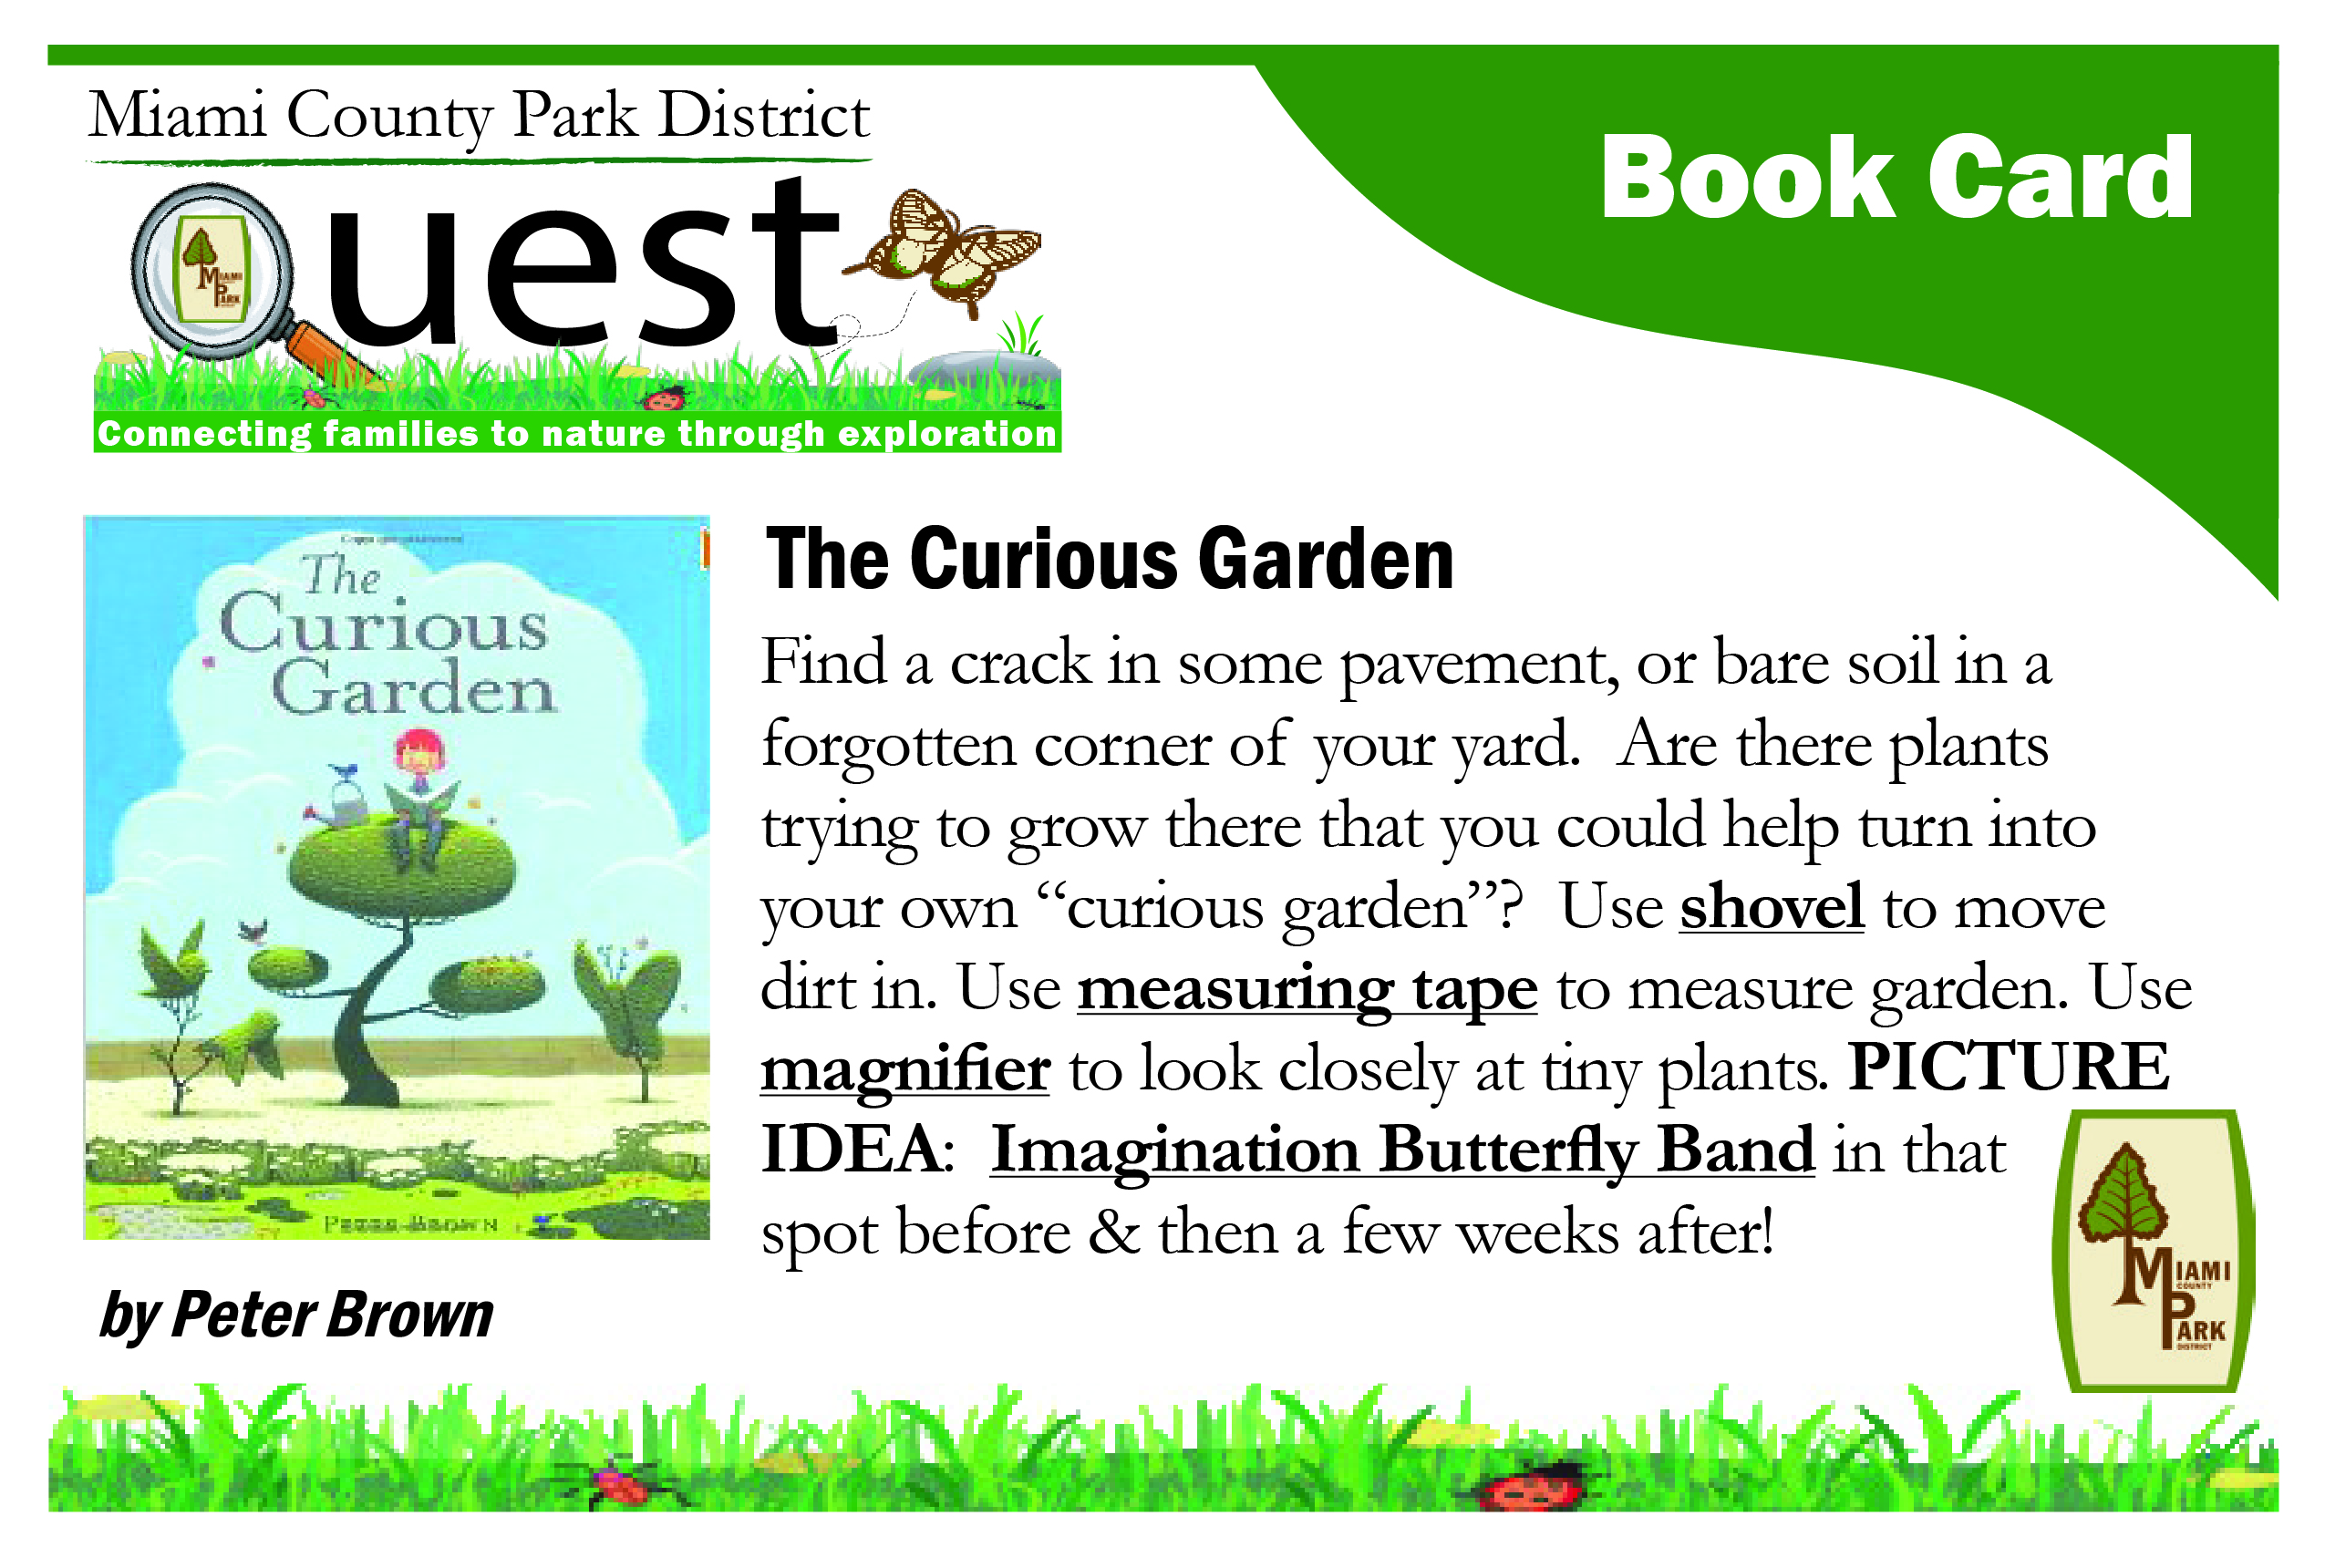 The Curious Garden Book Card